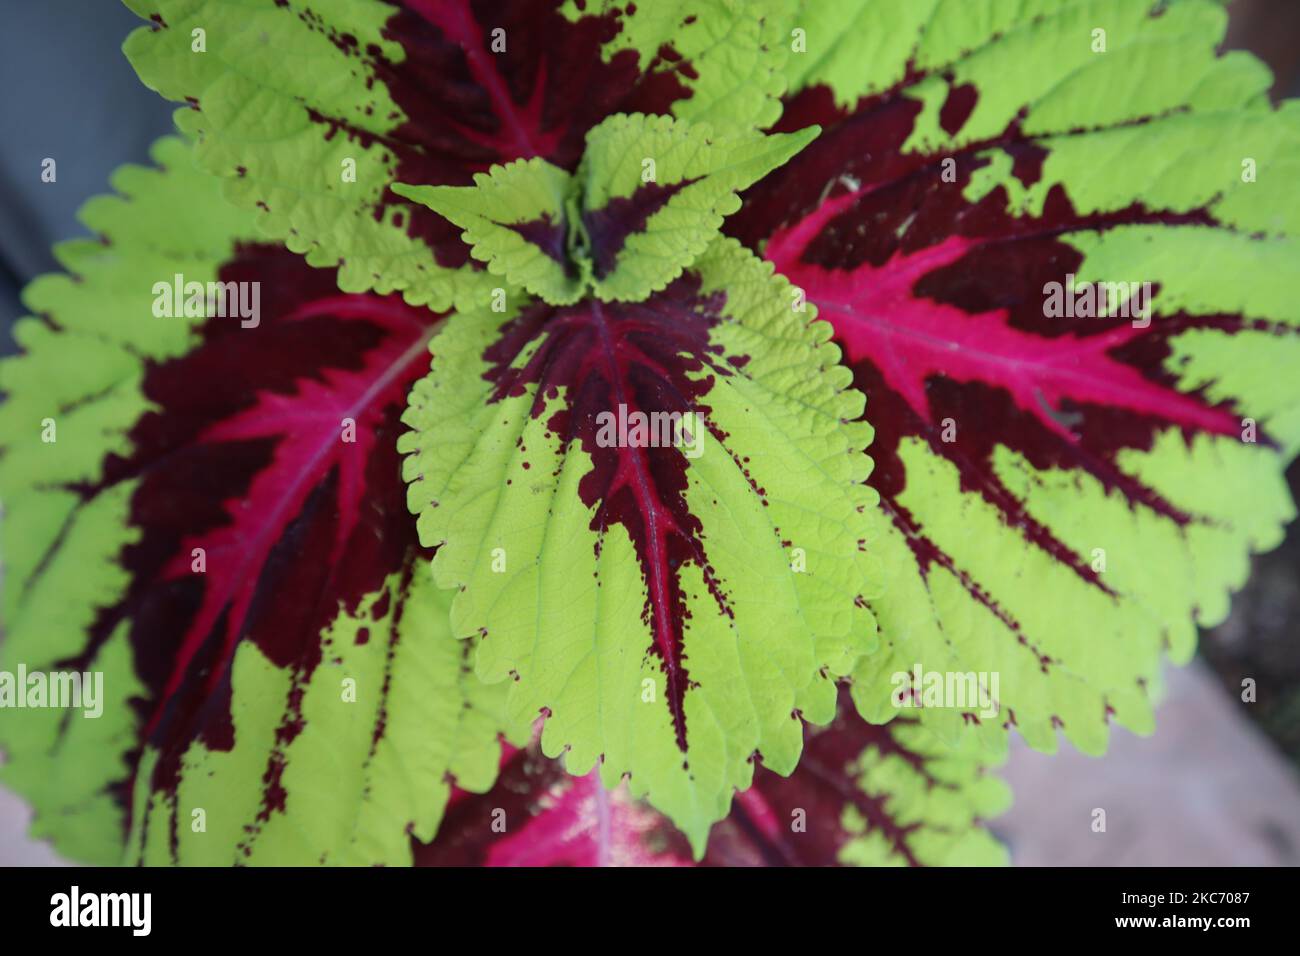 Eine Nahaufnahme von grünen und roten Kolusblättern in einem Garten. Stockfoto